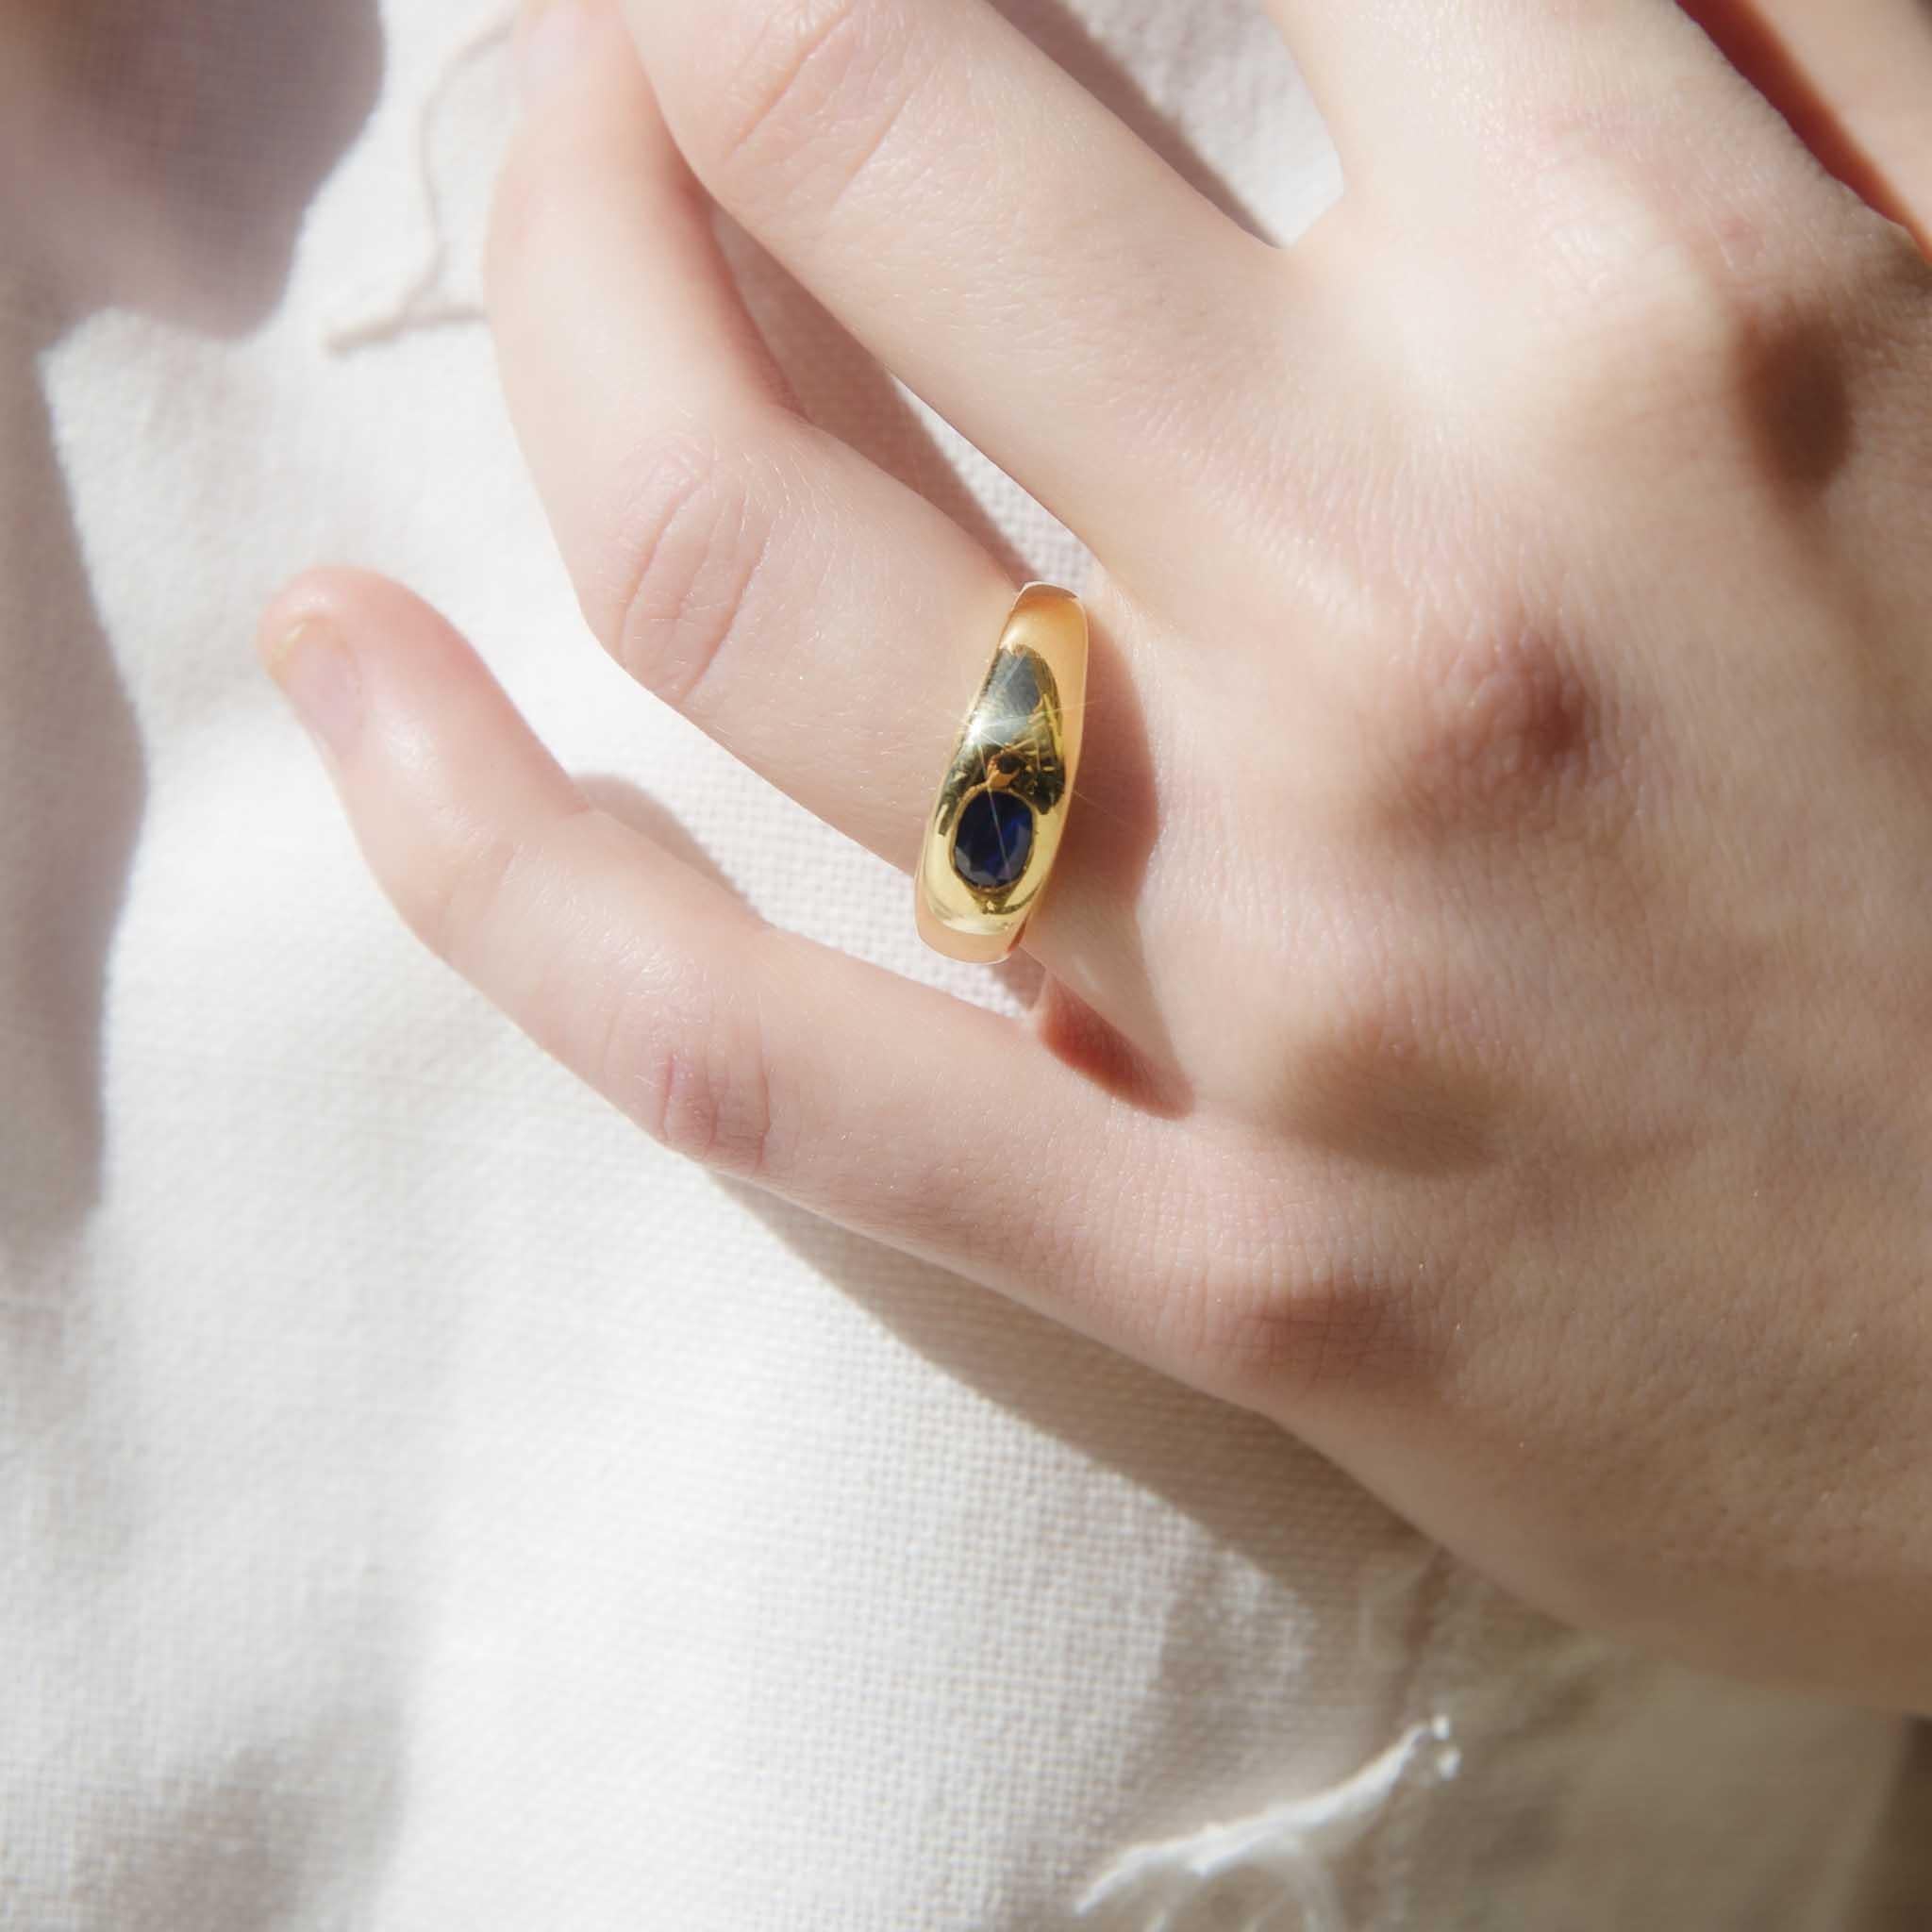 Der aus 9 Karat Gold geschmiedete Ring Nadya ist zurückhaltend gearbeitet, damit der tiefblaue Saphir zur Geltung kommt.  Manchmal ist das einfachste Design das kühnste.

Der Nadya Ring Edelstein Details
Das Gewicht des tiefblauen ovalen Saphirs